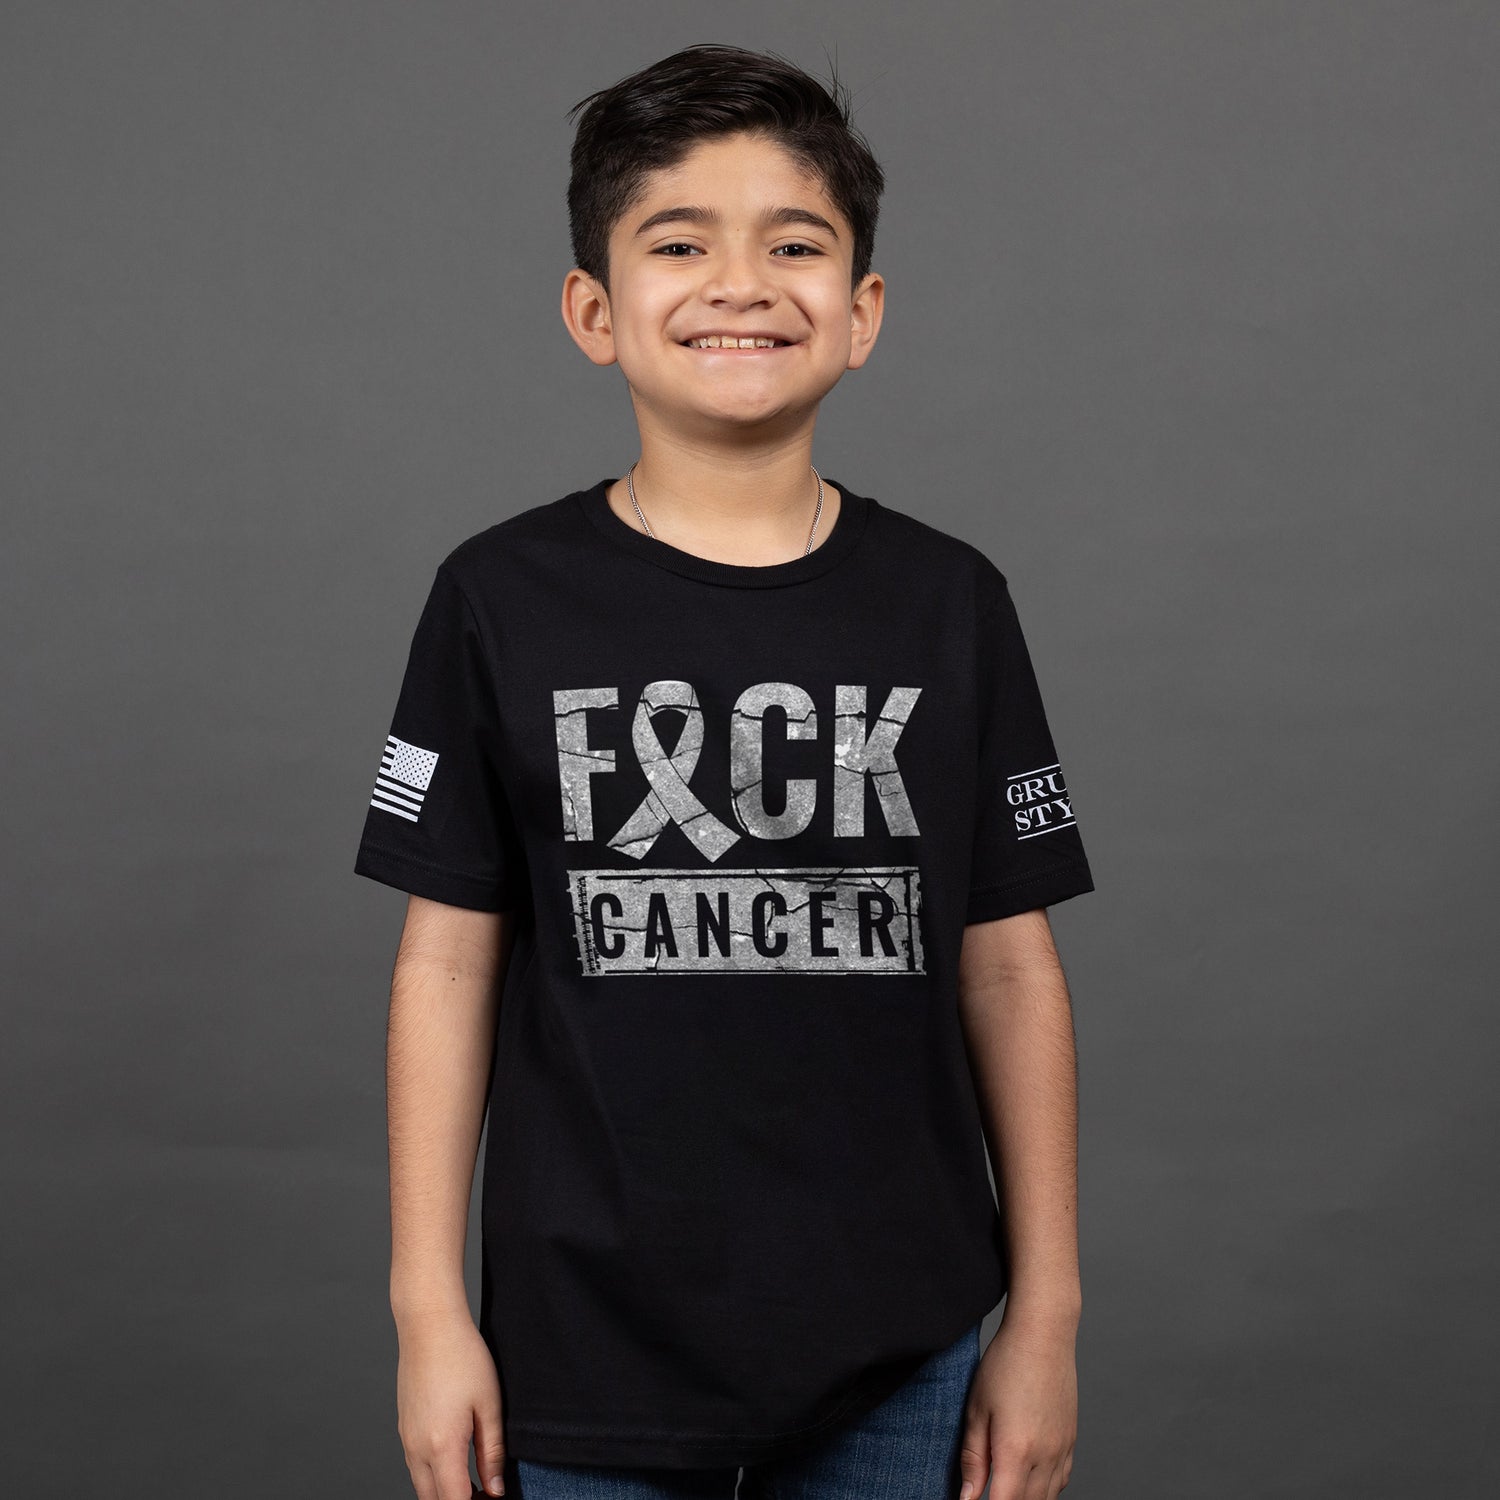 Kids Cancer Awareness Shirt 